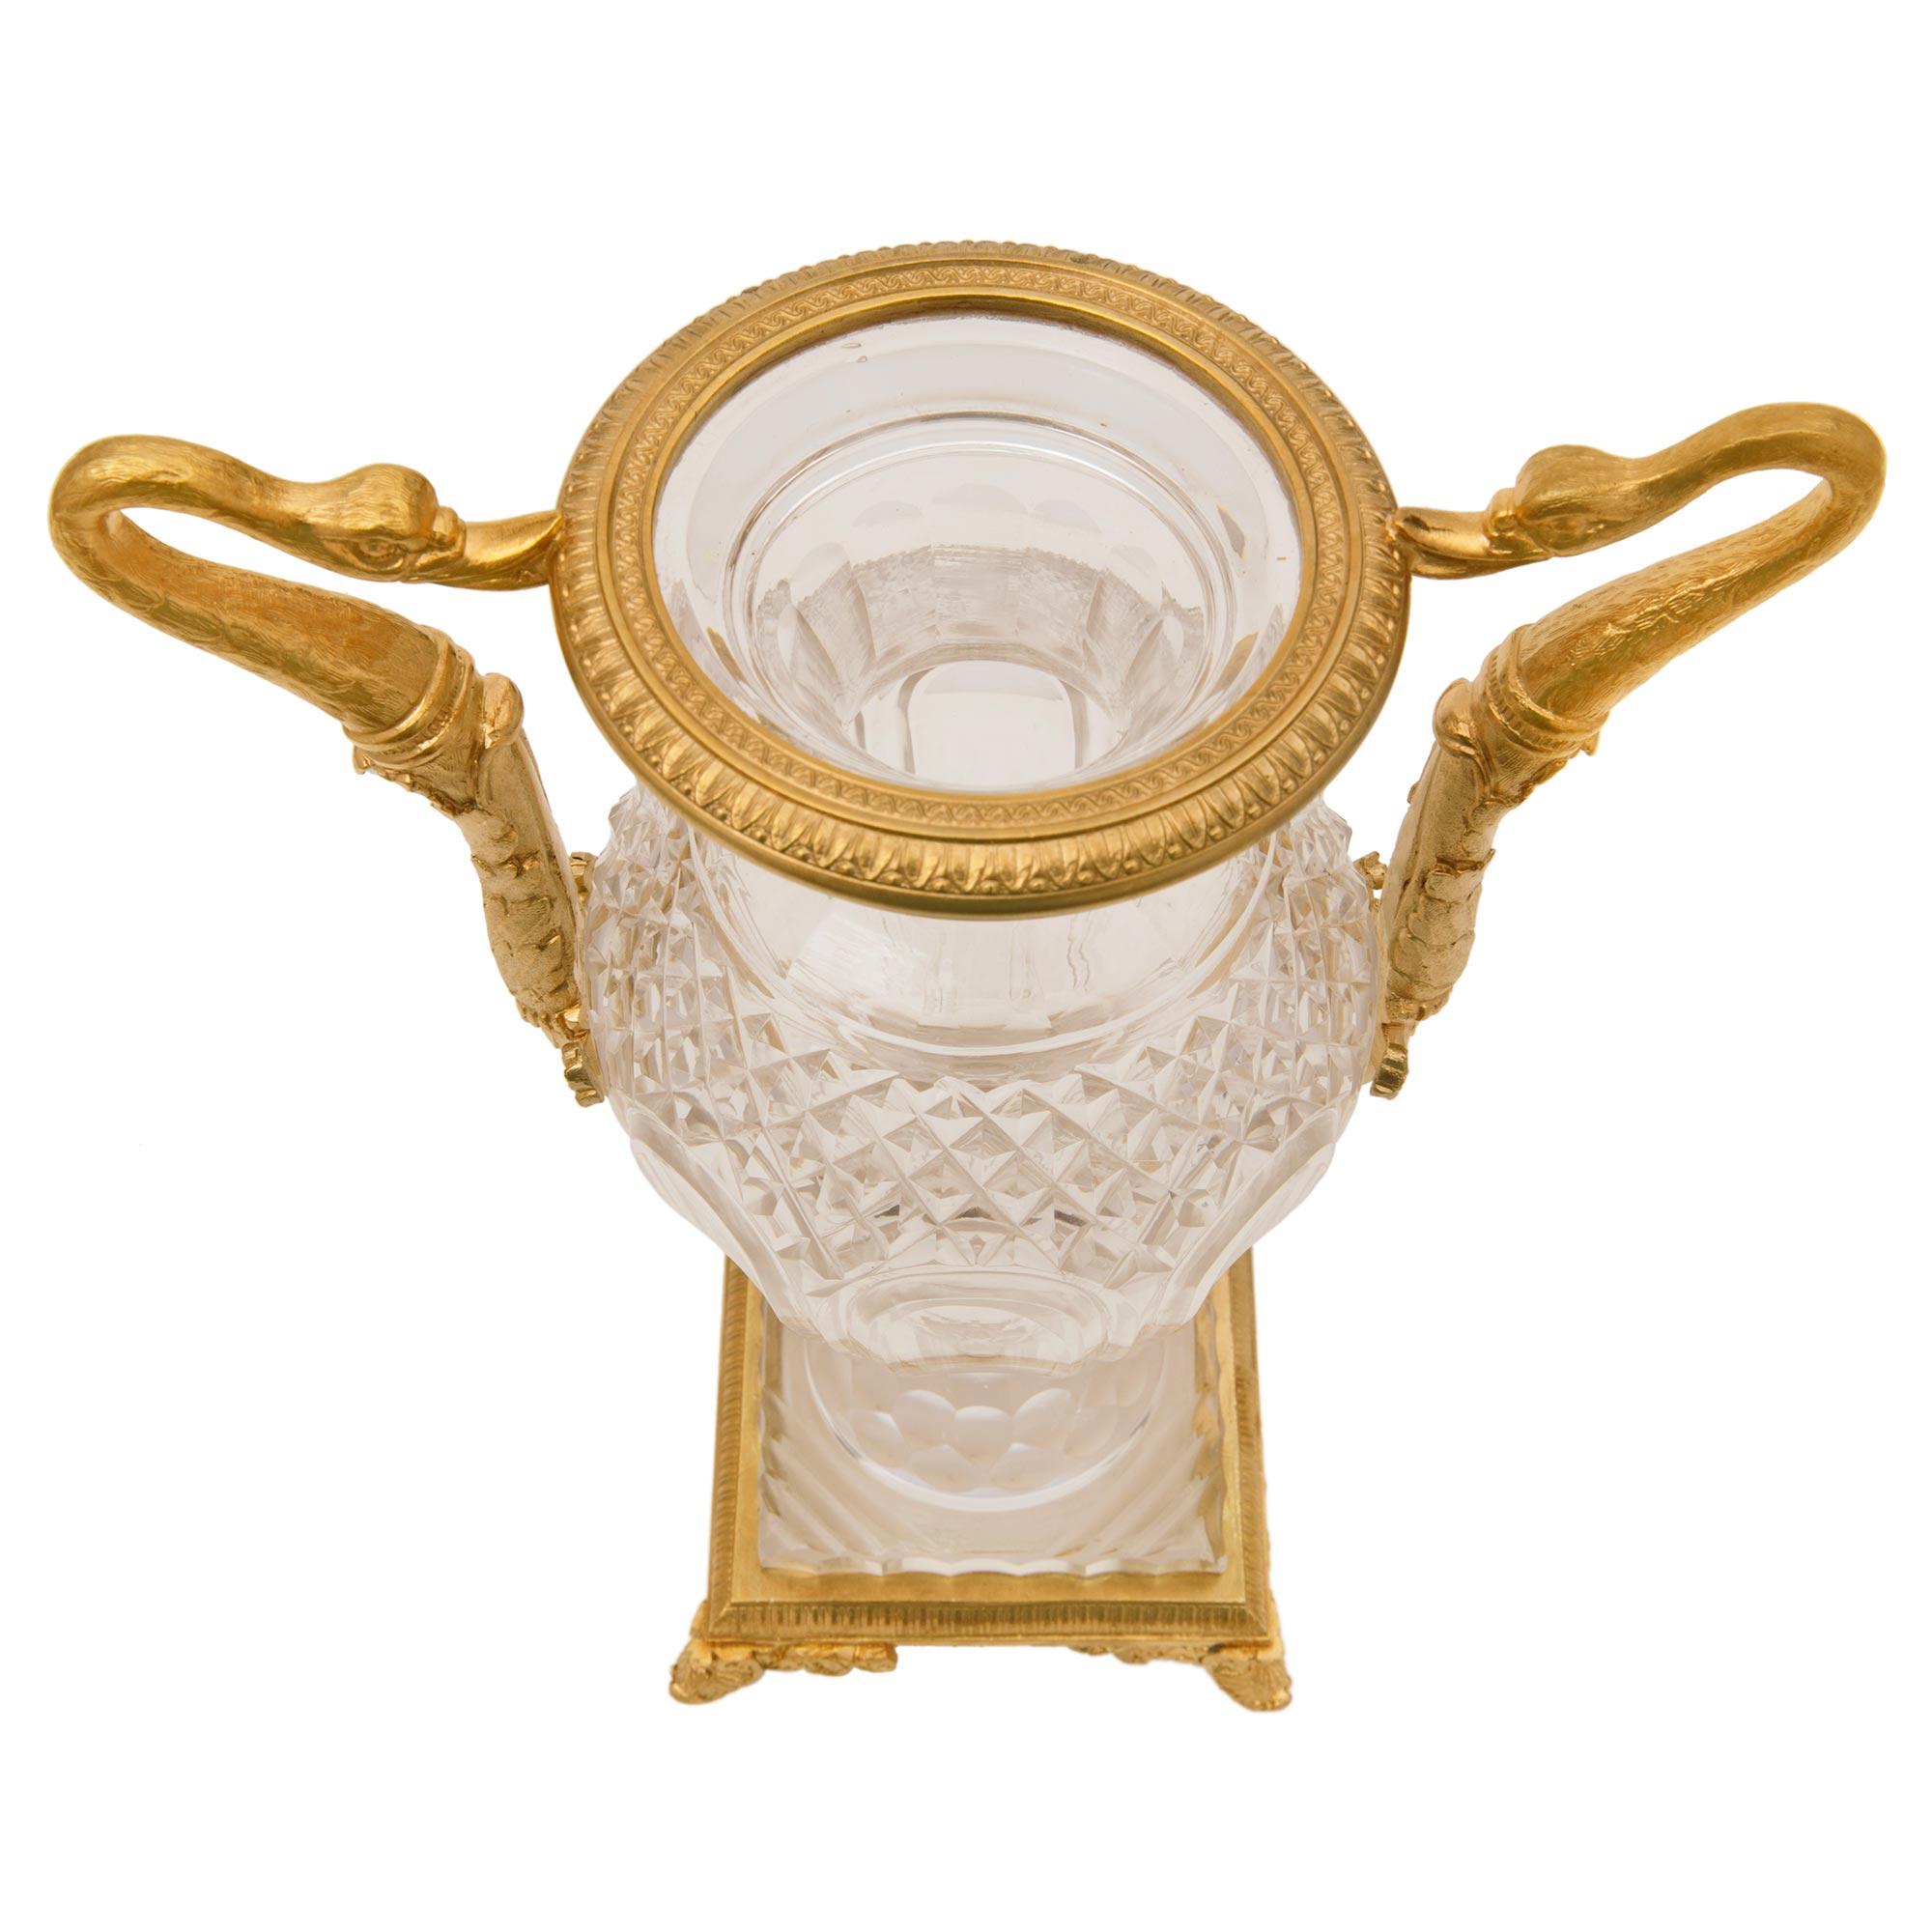 Paire de vases néo-classiques français du XIXe siècle en bronze doré et cristal de Baccarat. Chaque vase est surélevé par une élégante base carrée avec une bande enveloppante en bronze doré et des pieds en palmettes. Ces magnifiques vases en cristal